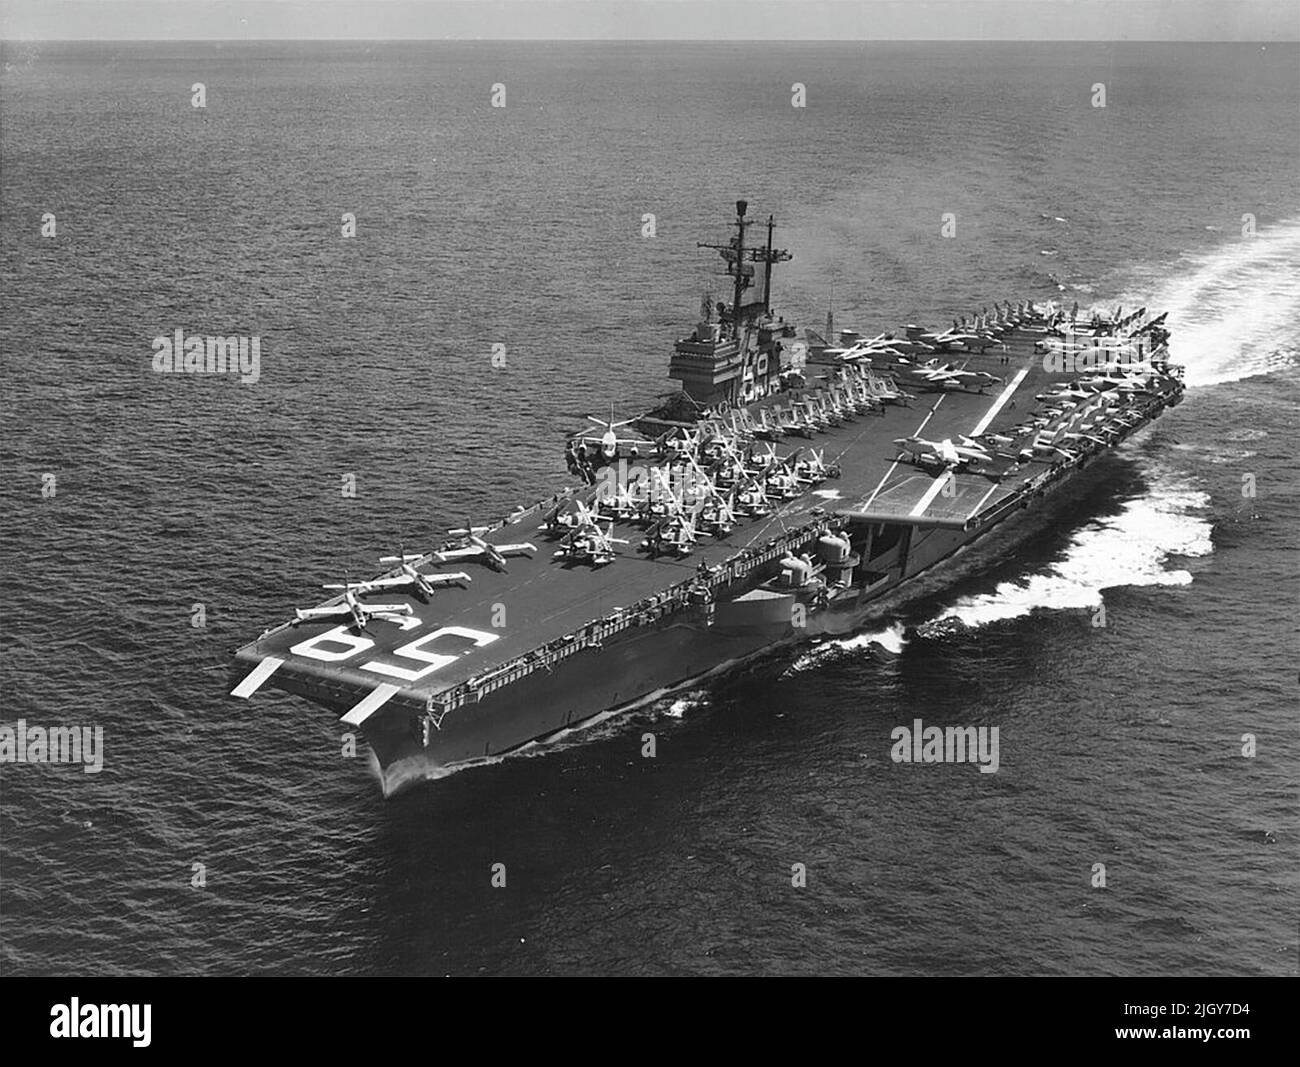 USS Forrestal (CVA-59) in corso in mare nel 1957 Foto Stock